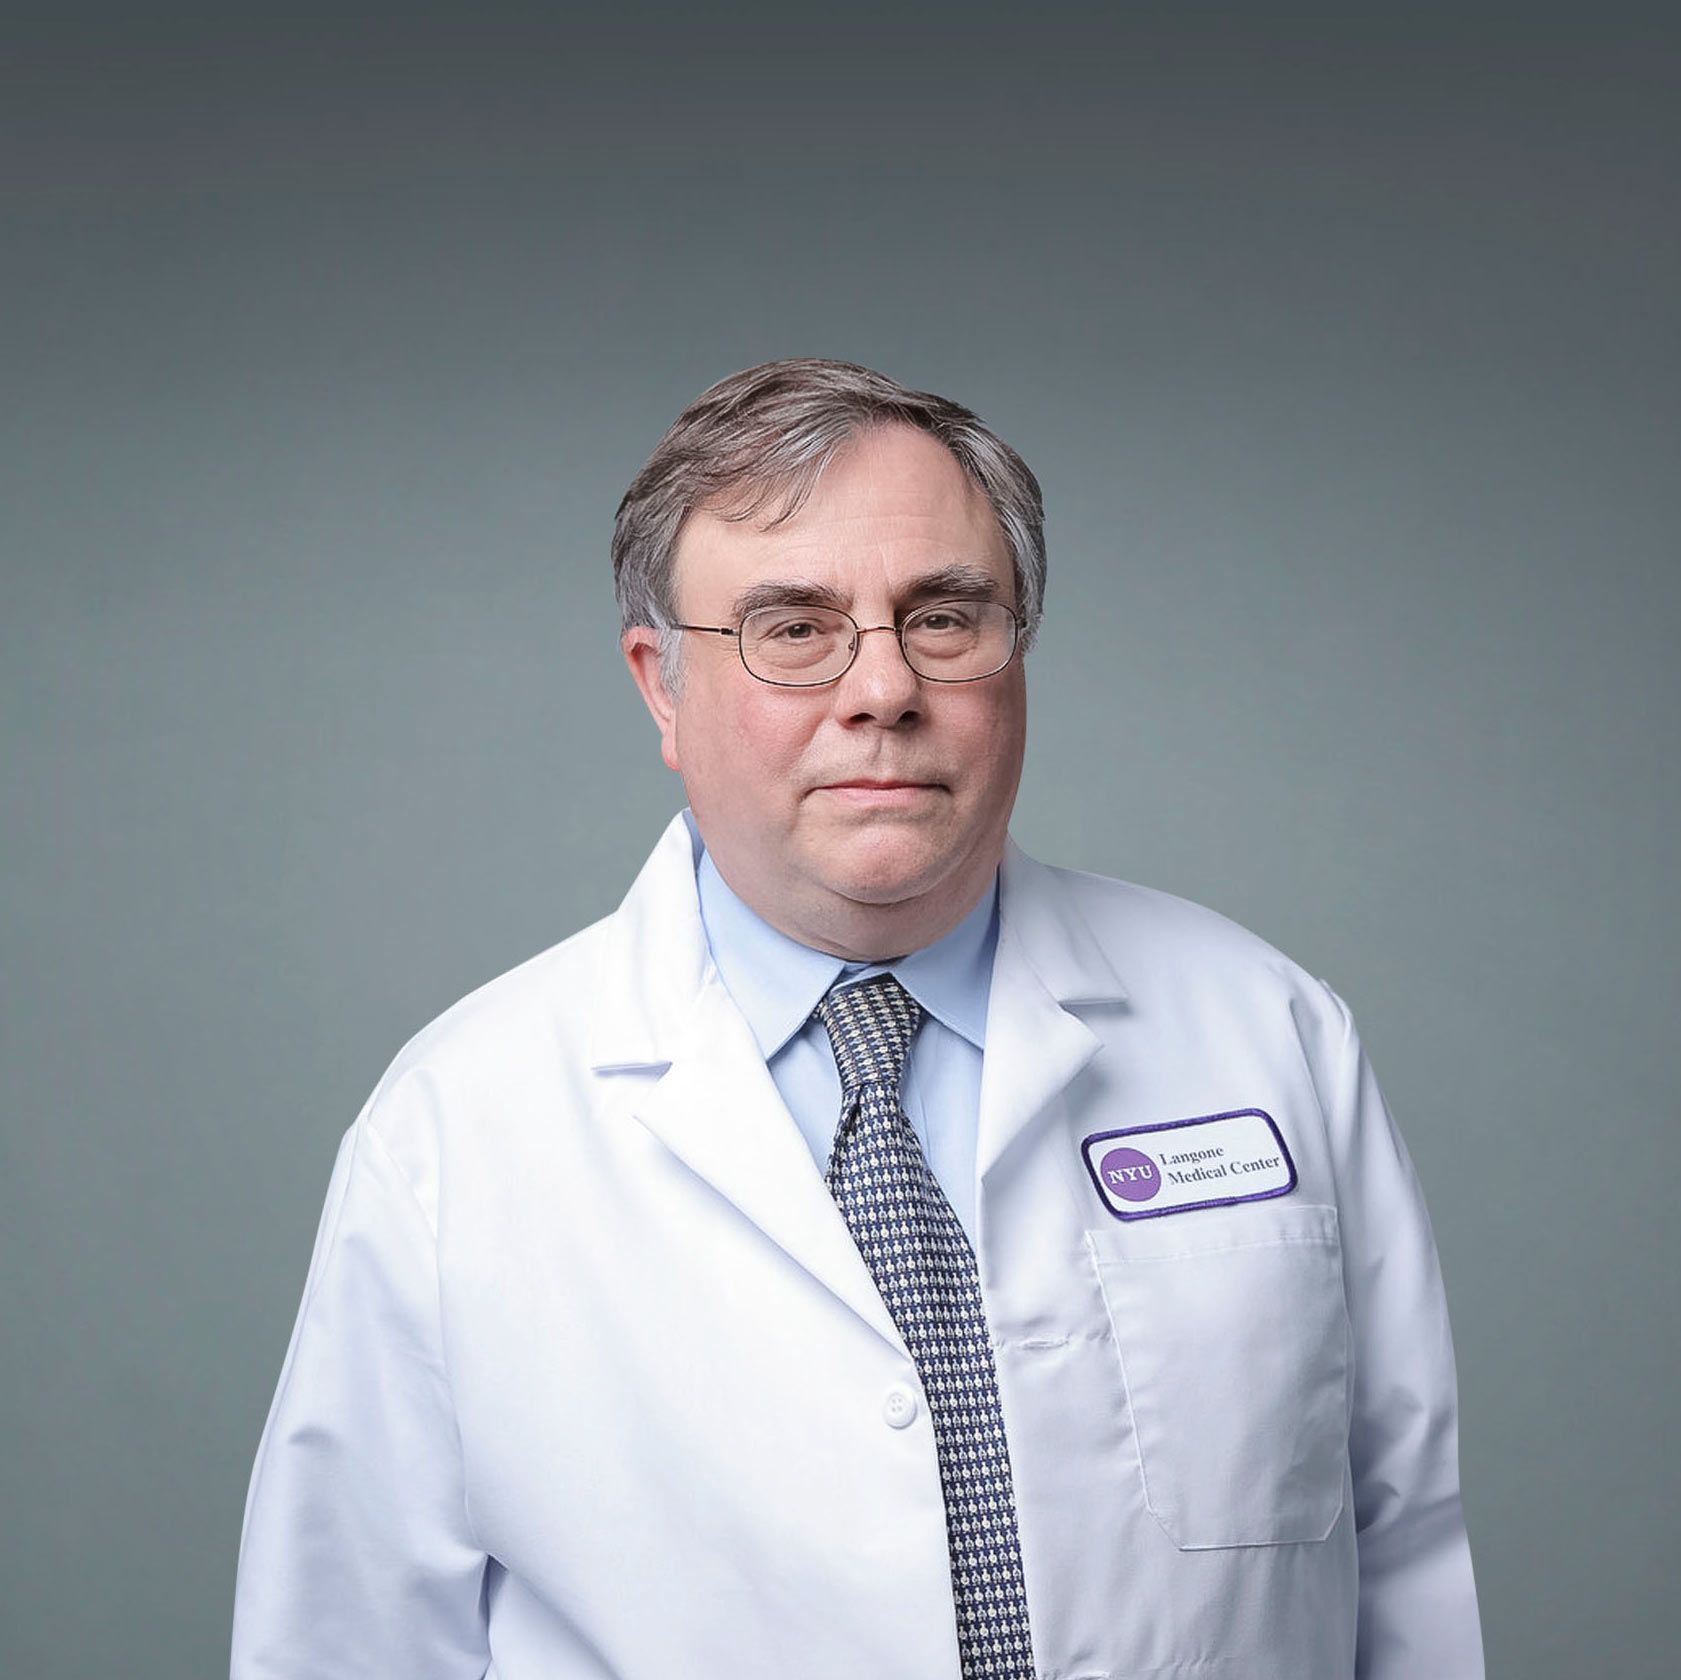 Dr. Kenneth Hymes